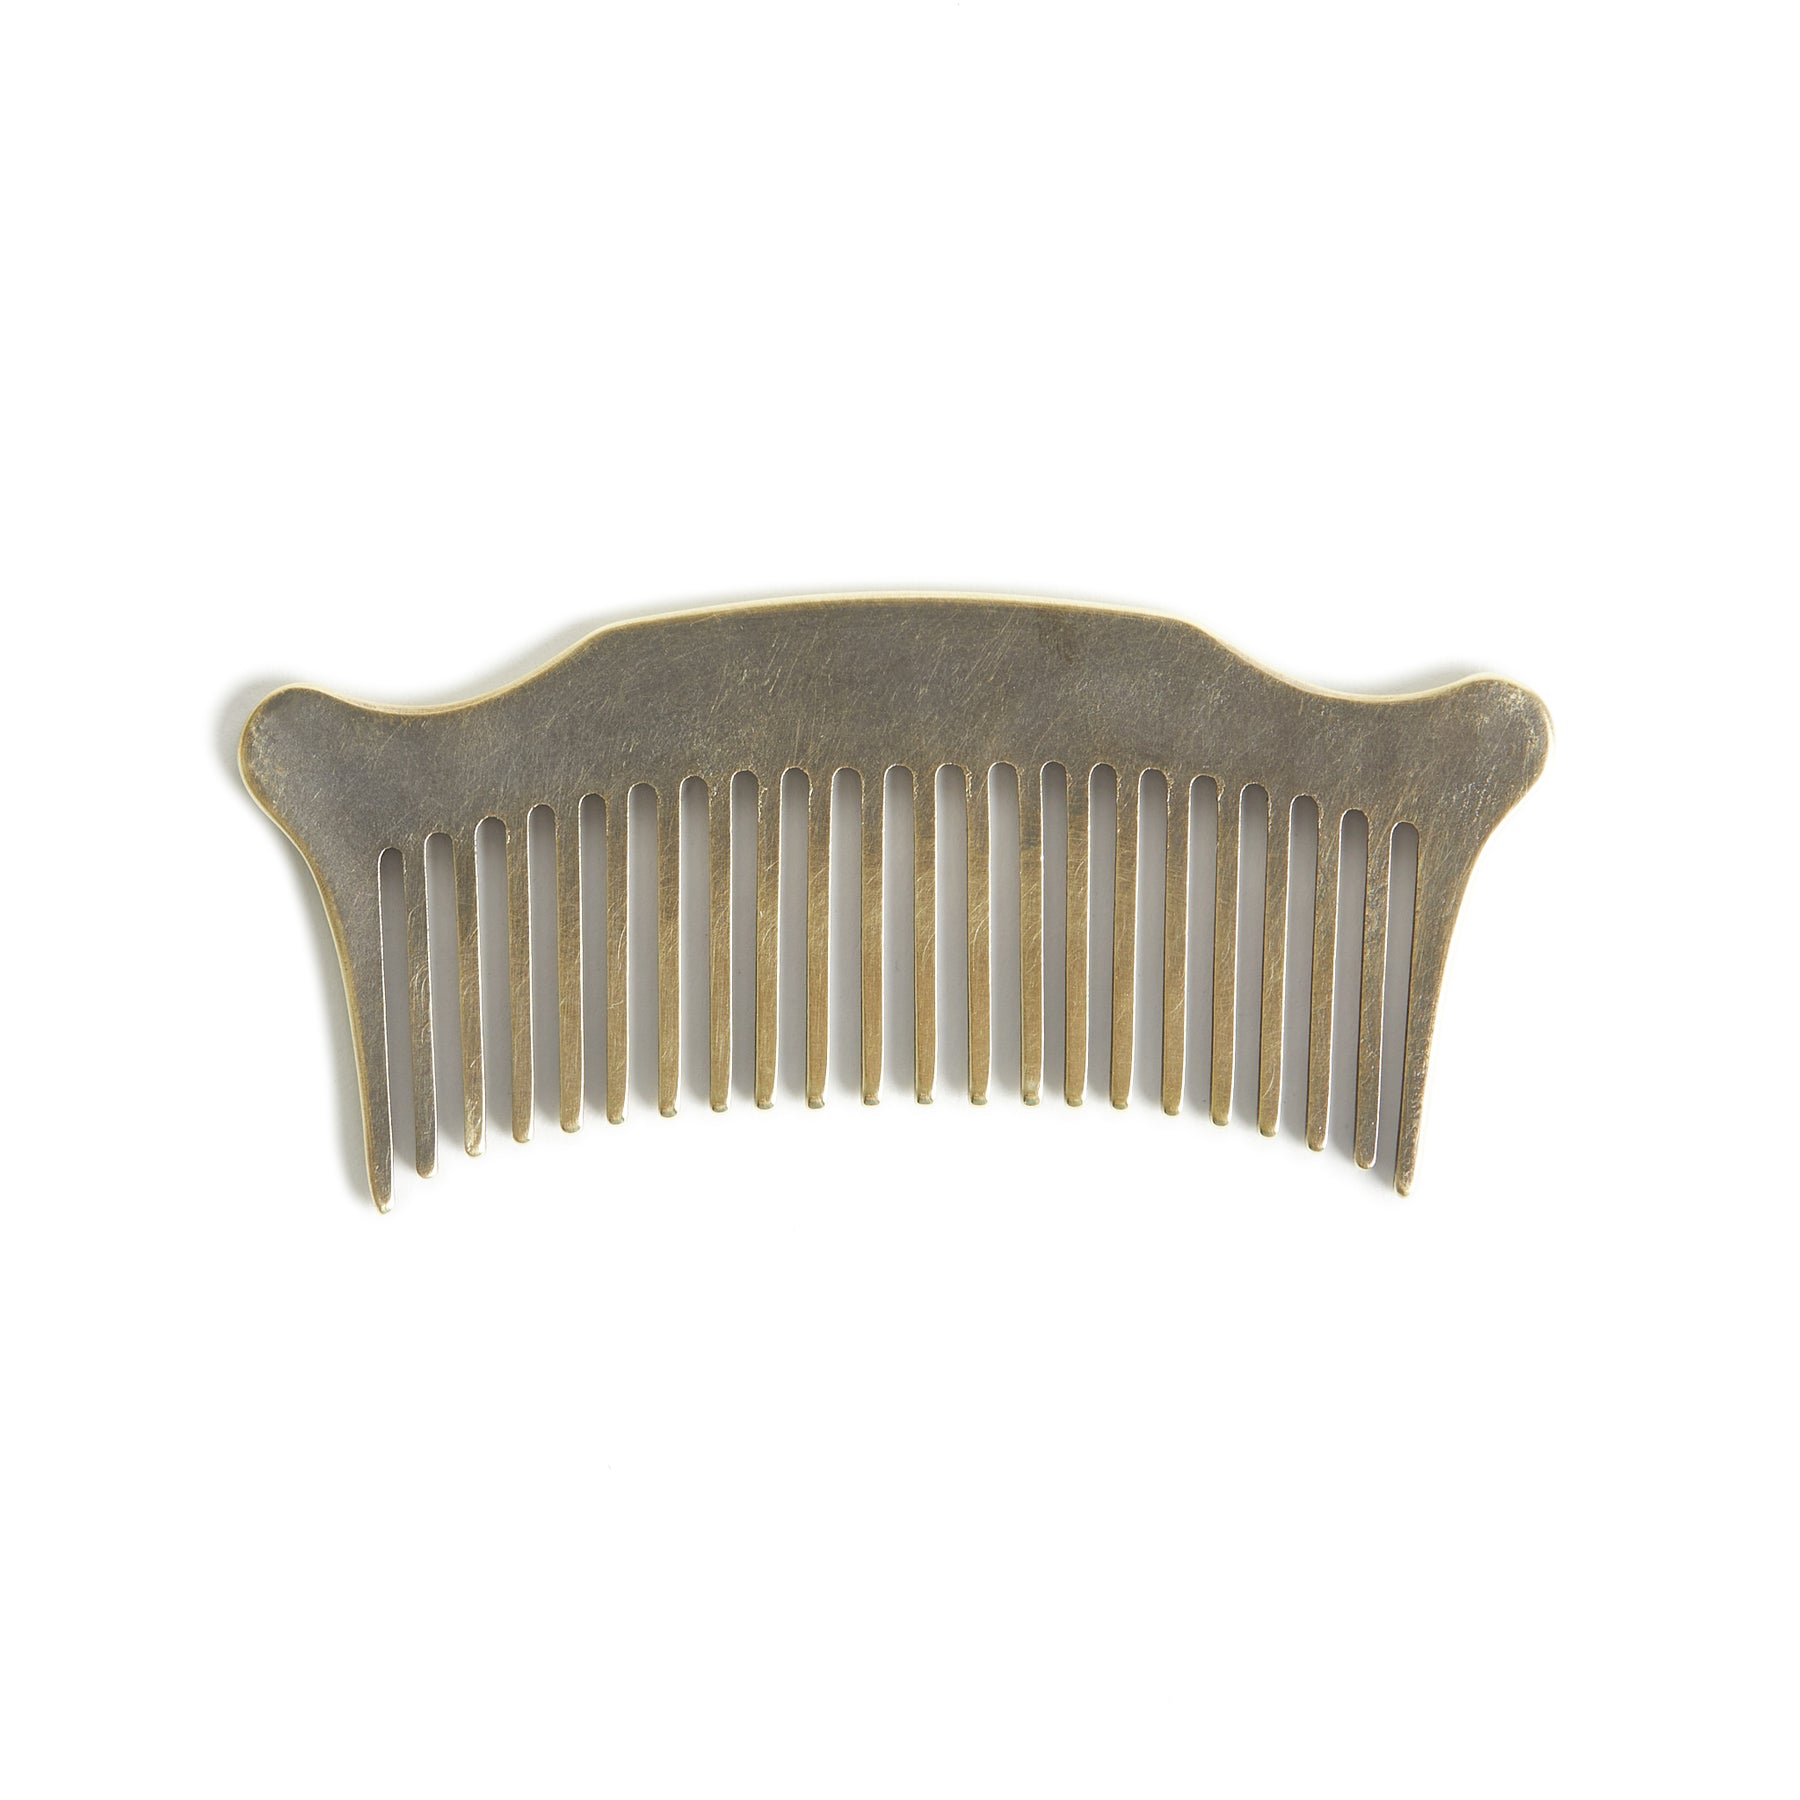 Studebaker Comb – Studebaker Metals